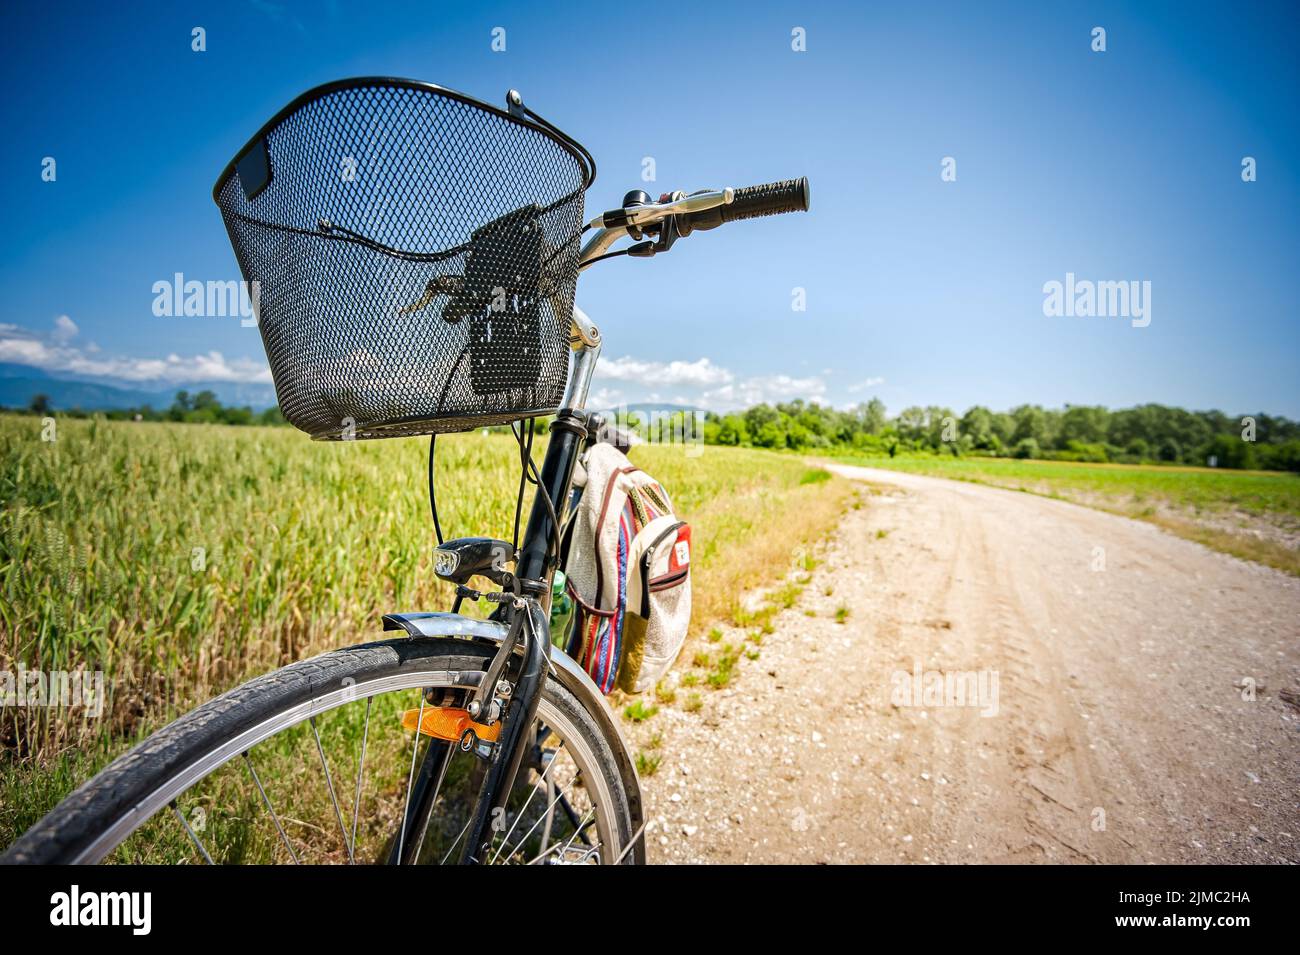 Gros plan sur vélo sur la route rurale. Concept d'image pour un style de vie sain Banque D'Images